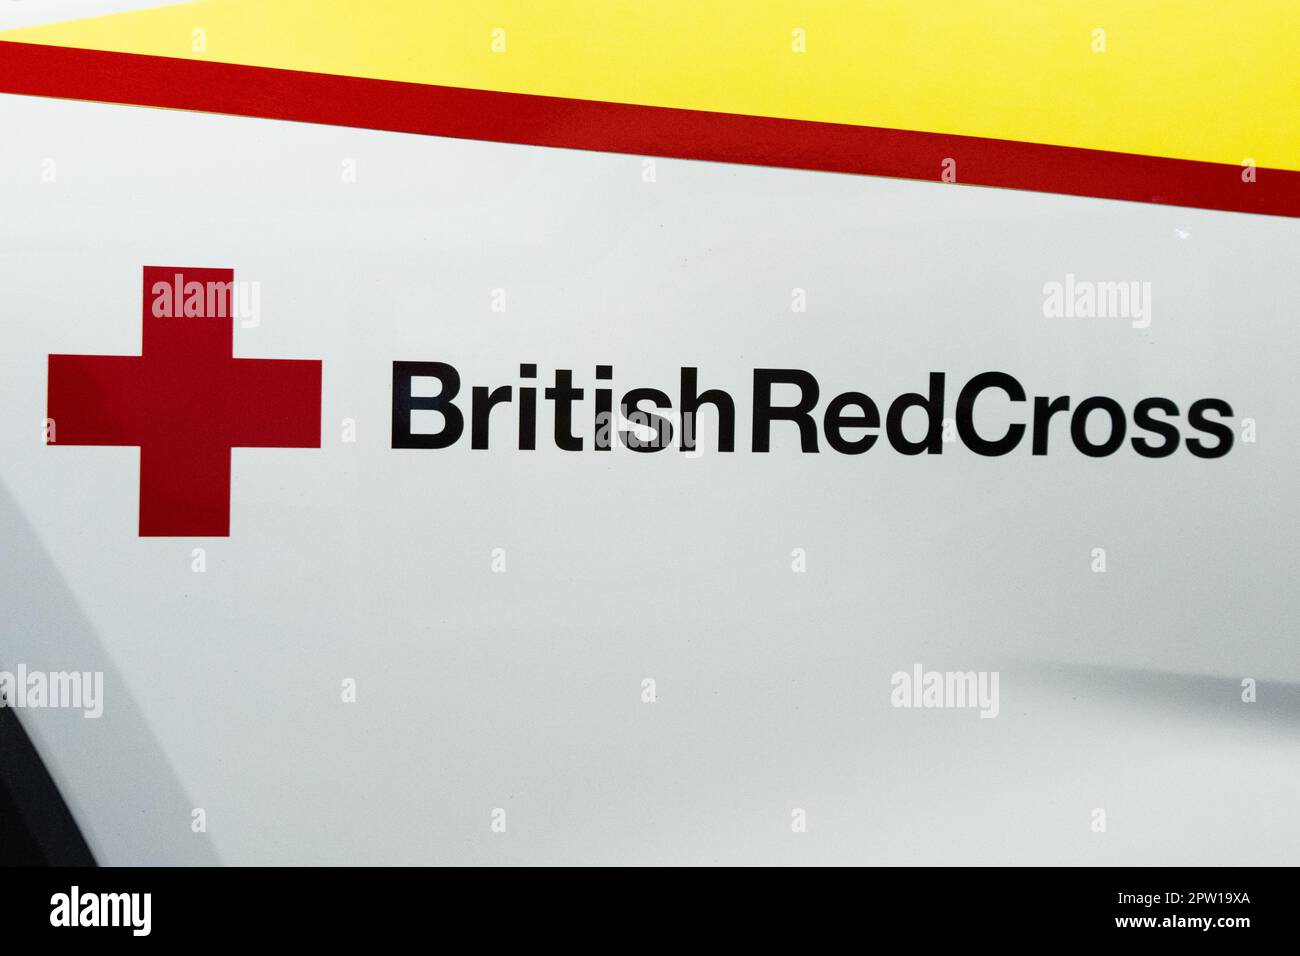 British Red Cross logo on side of emergency vehicle, UK Stock Photo